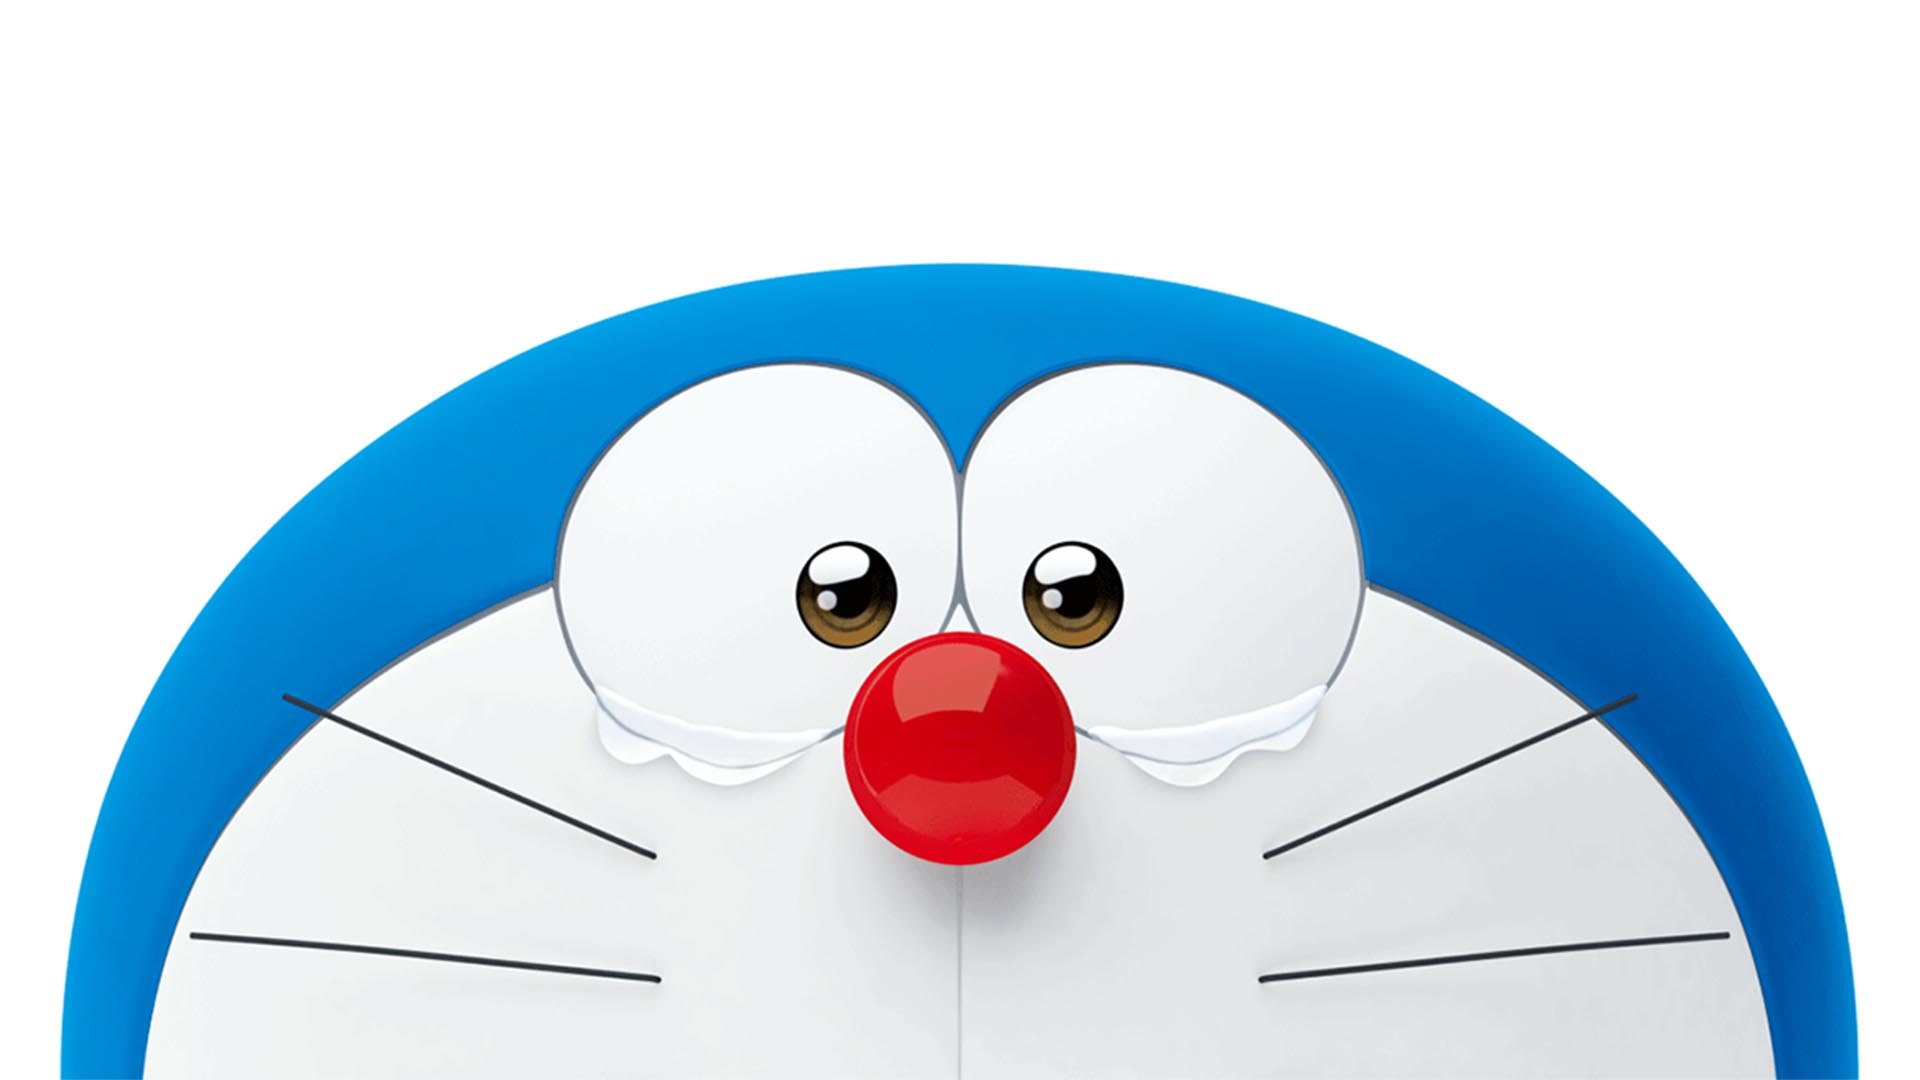 Stand By Me Doraemon Wallpaper WallpaperSafari